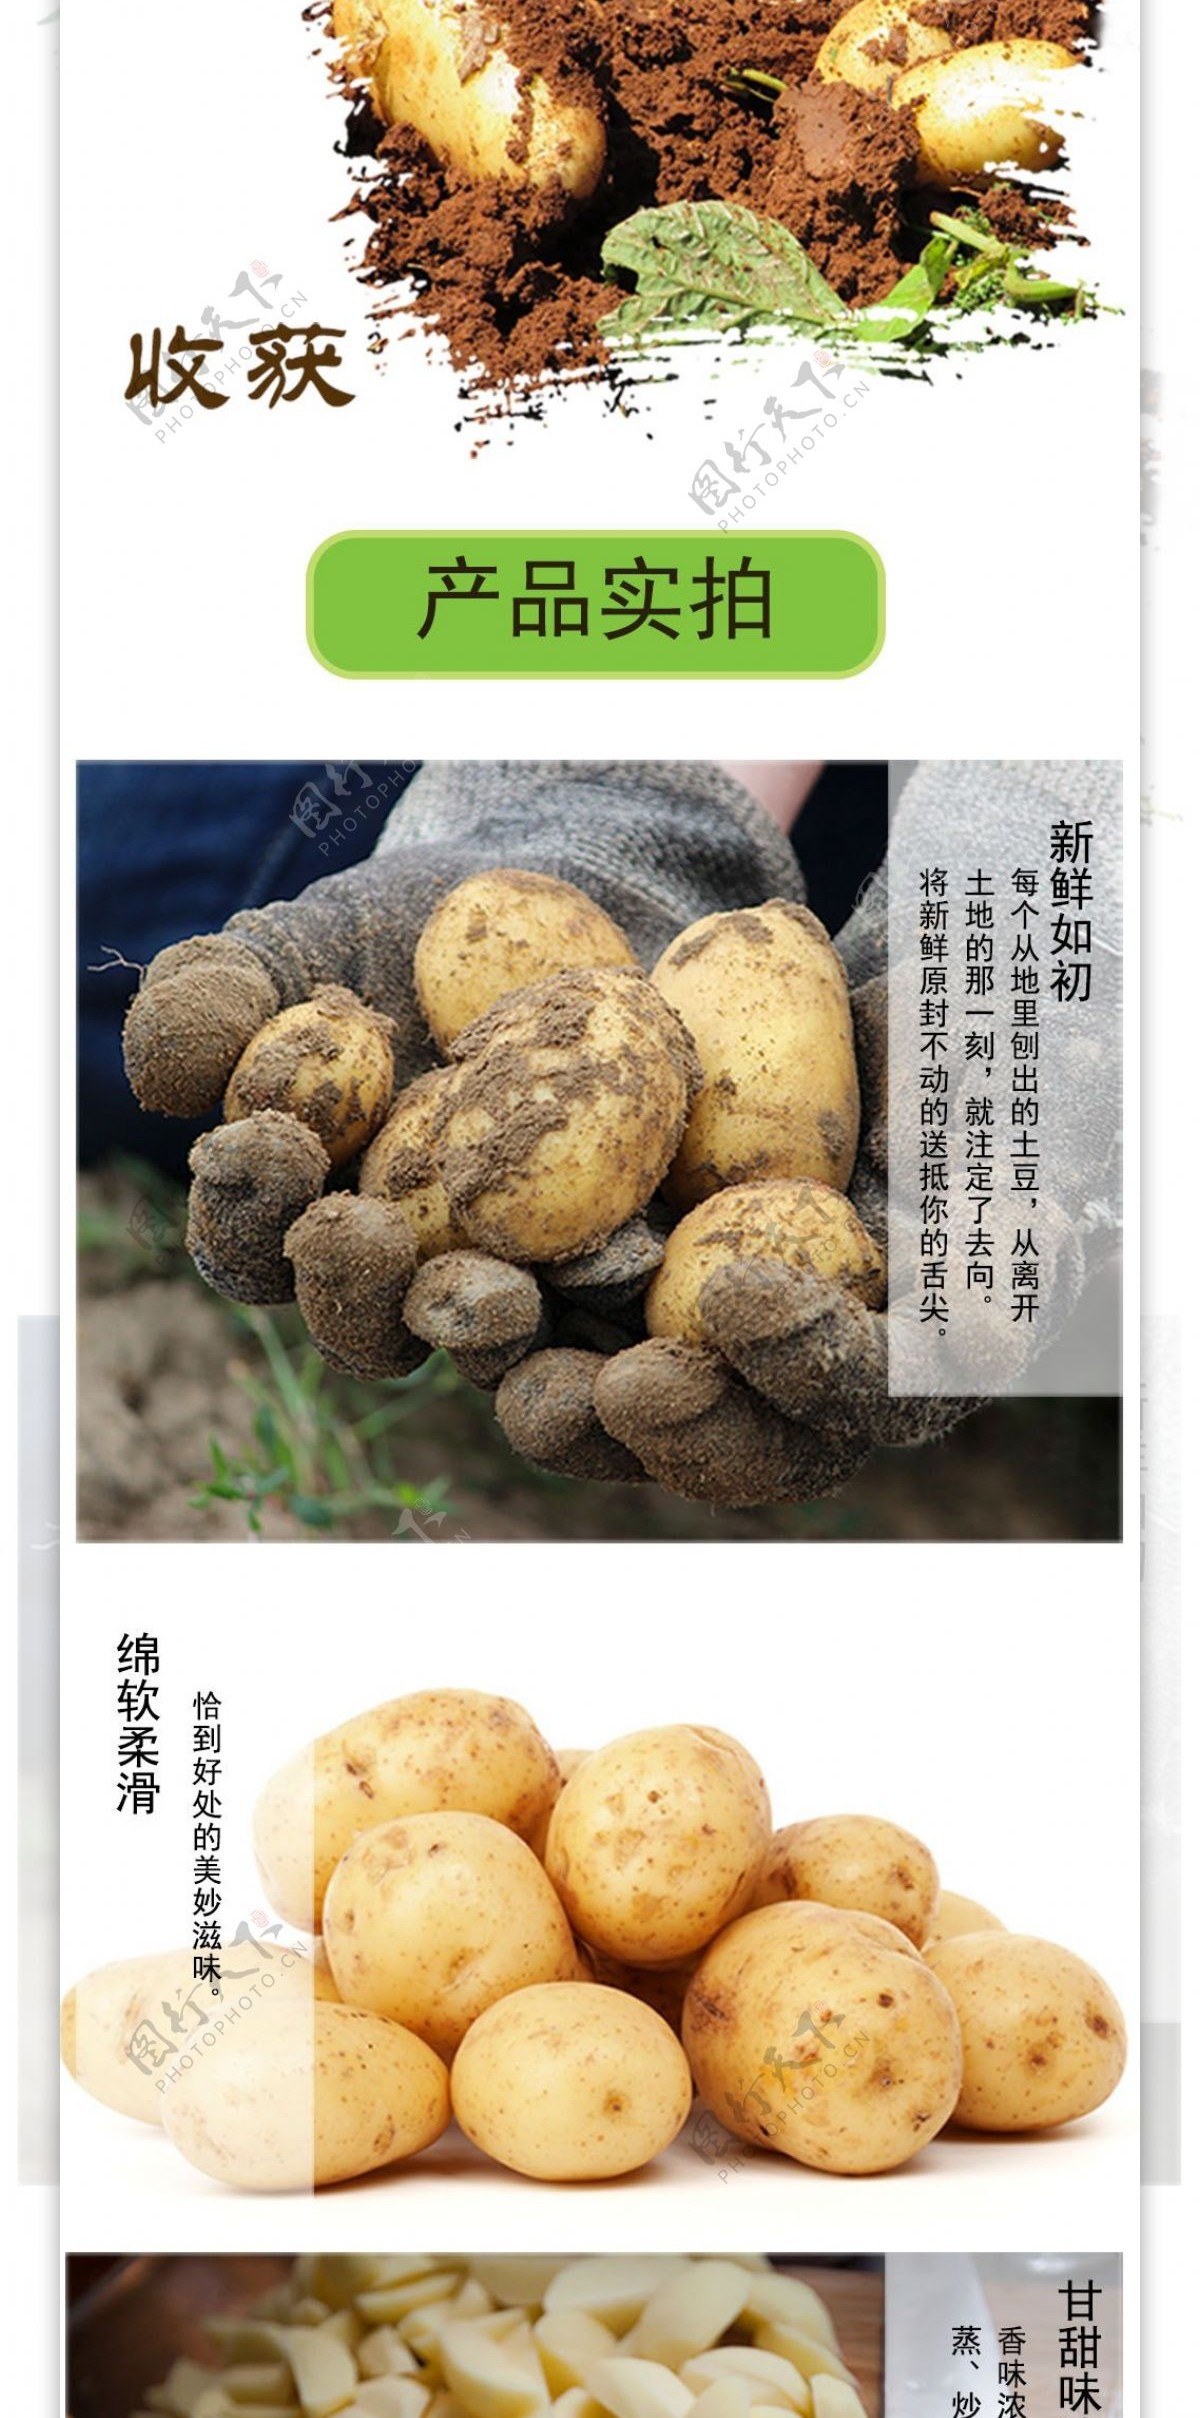 土豆详情页设计